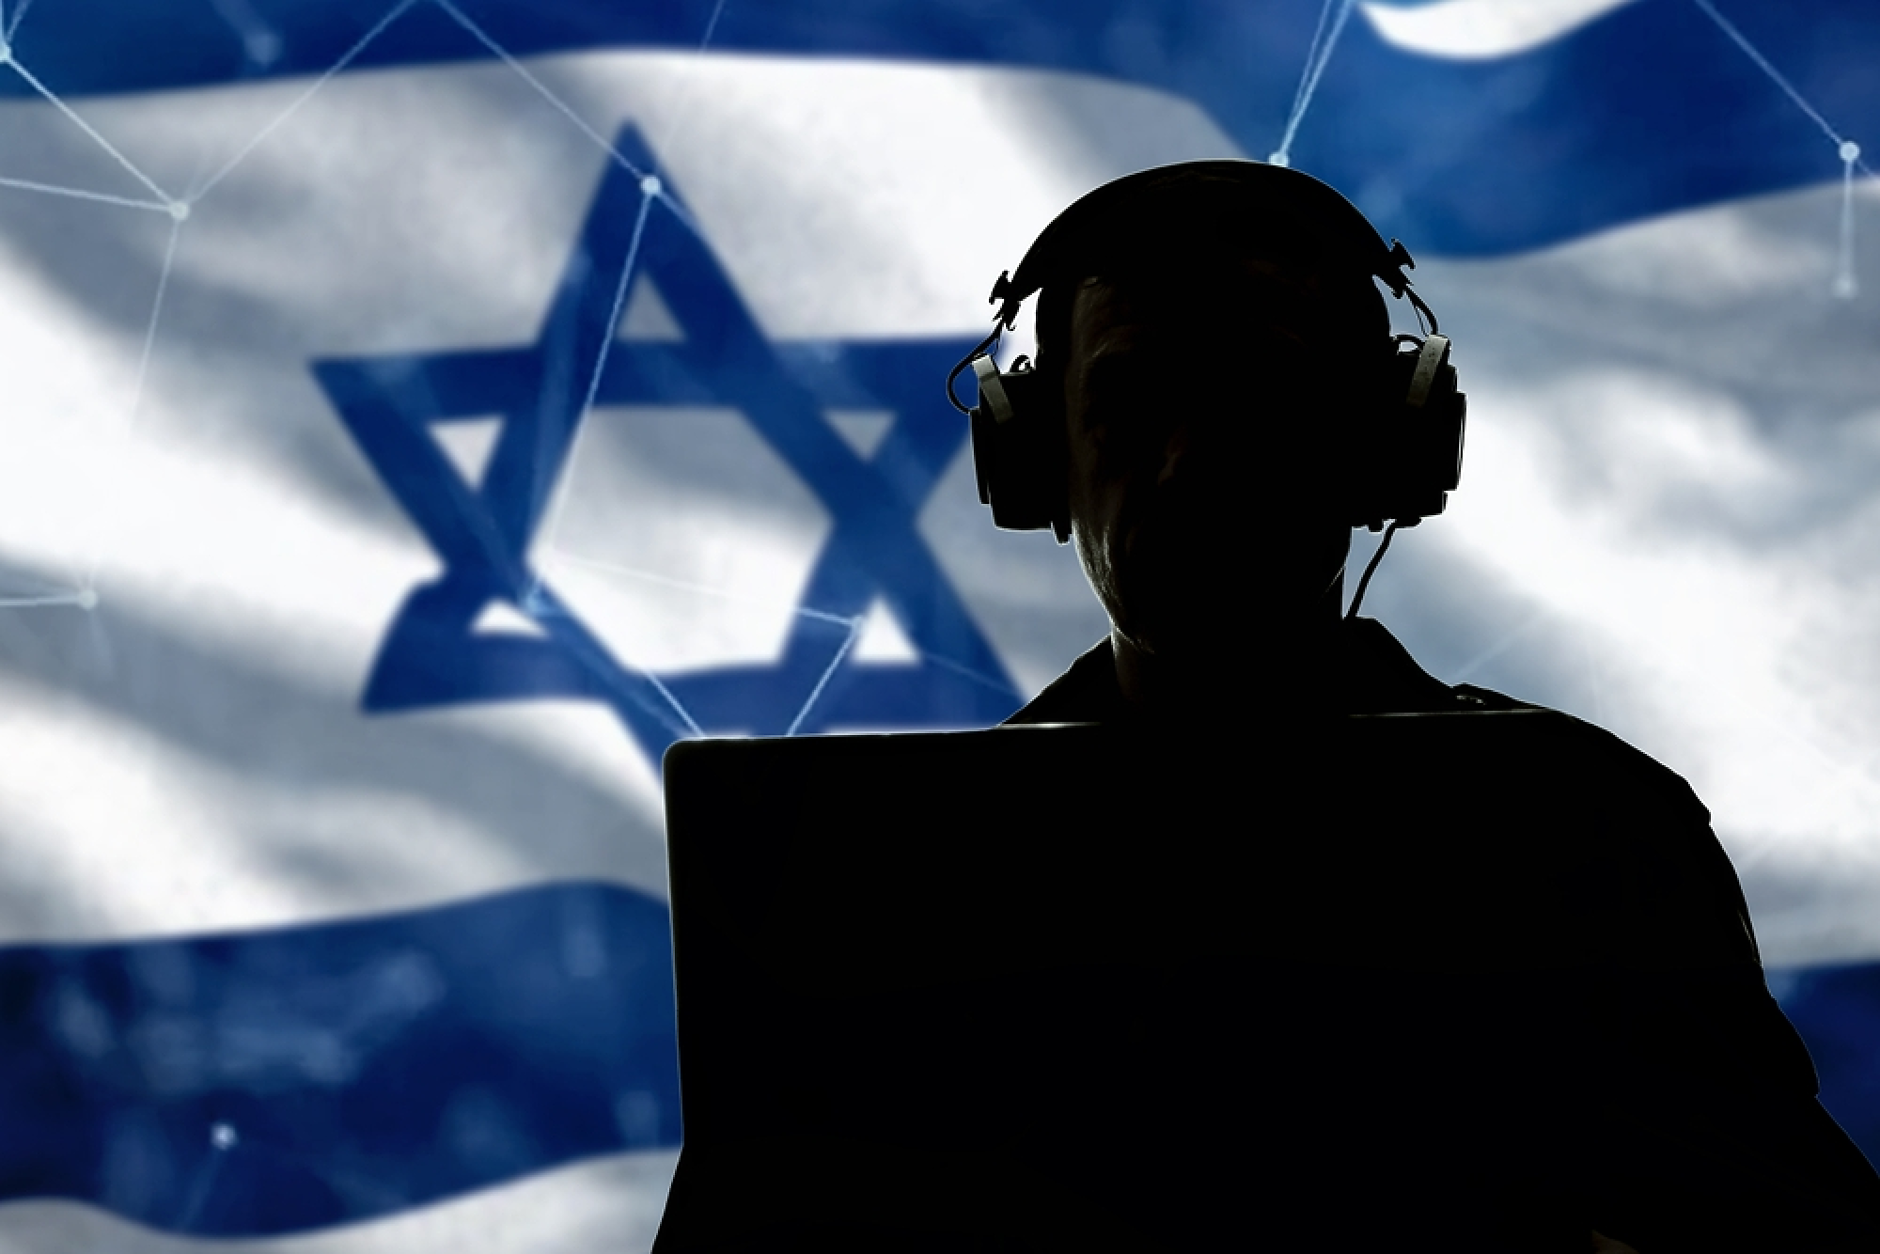 Шефът на военното разузнаване на Израел подаде оставка от поста и от армията